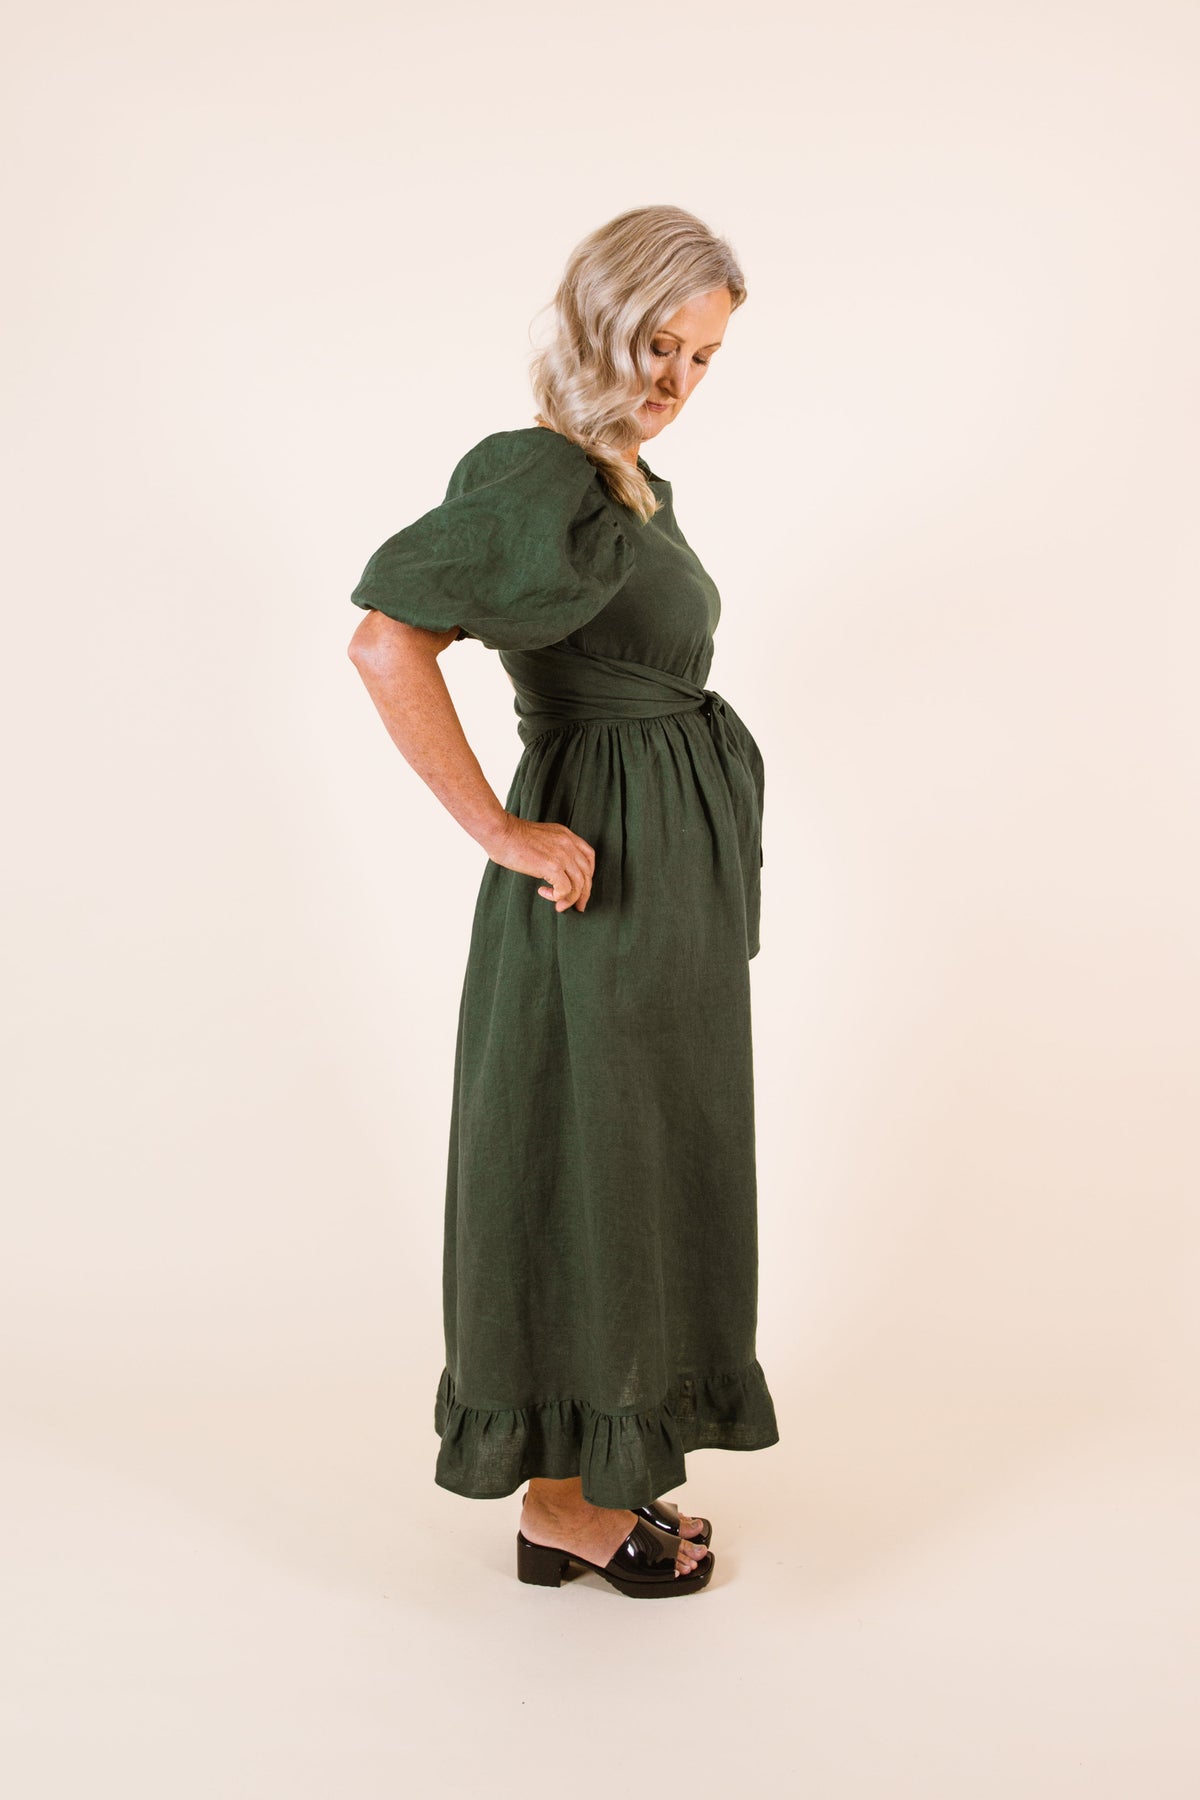 Estella Dress / Top / Skirt